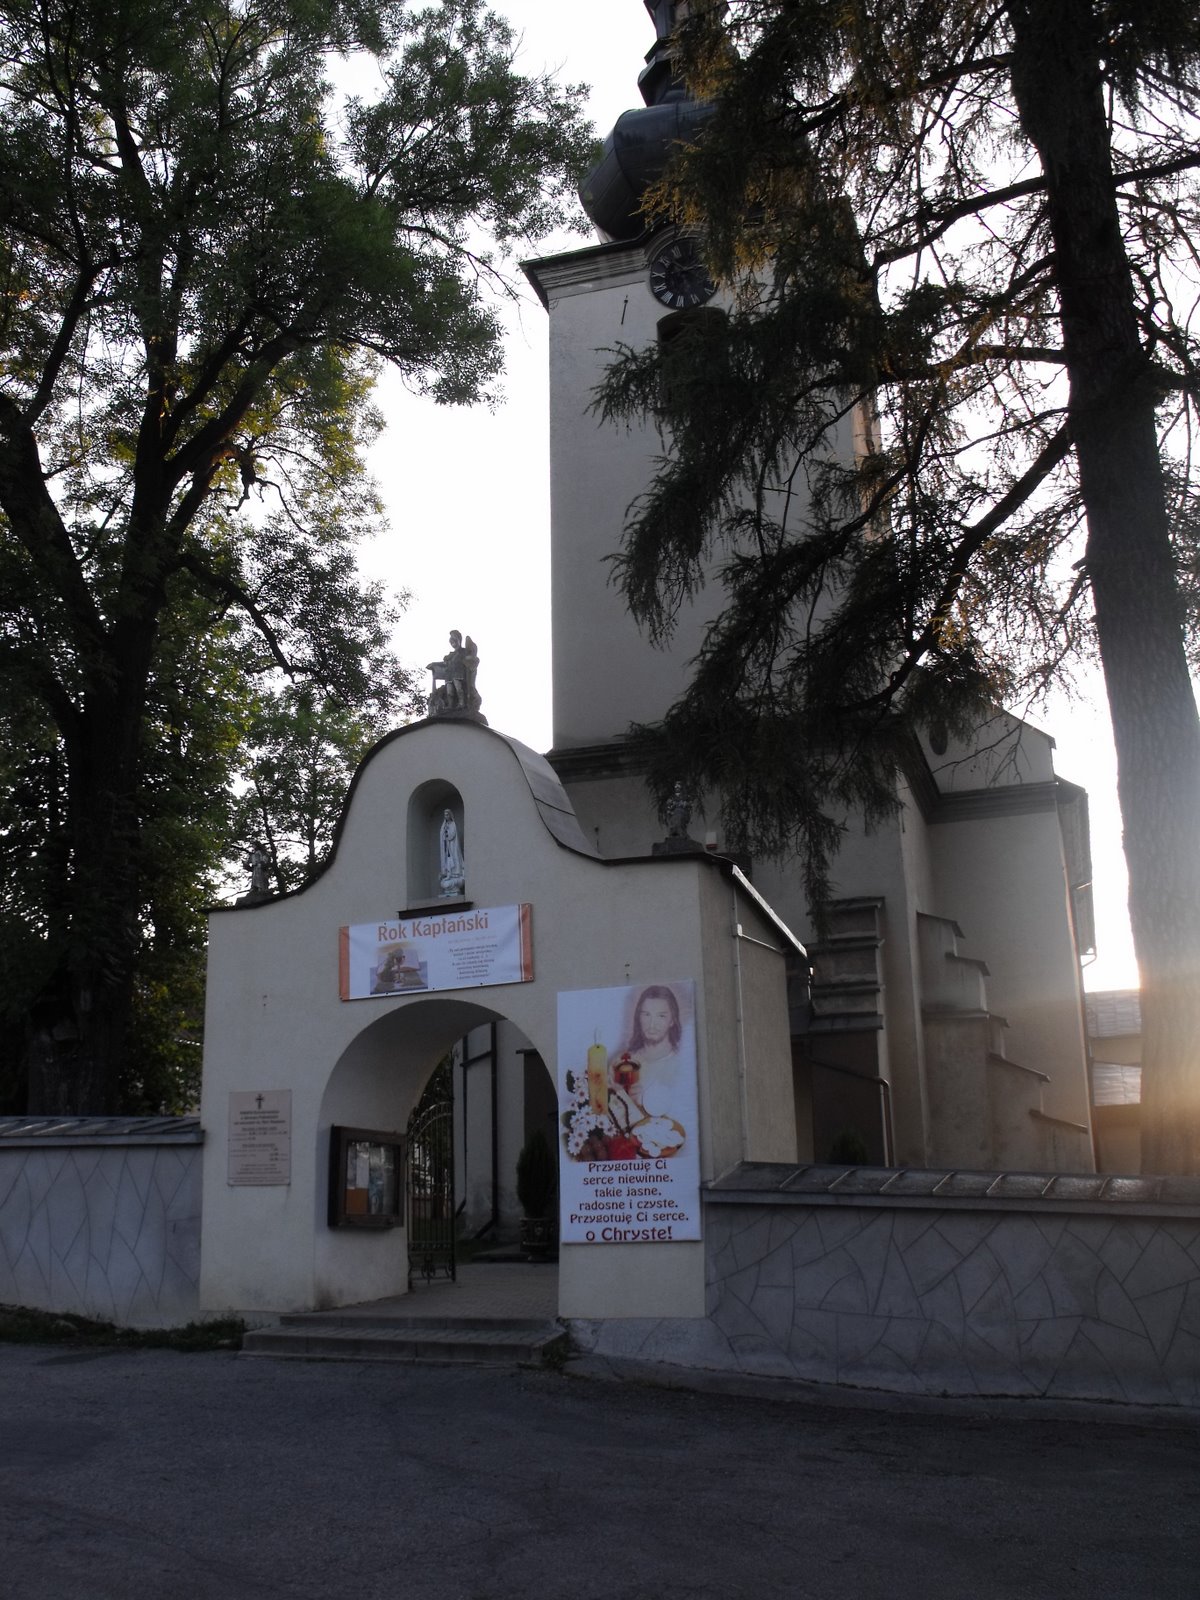 Odrowaz Church (front view).jpg